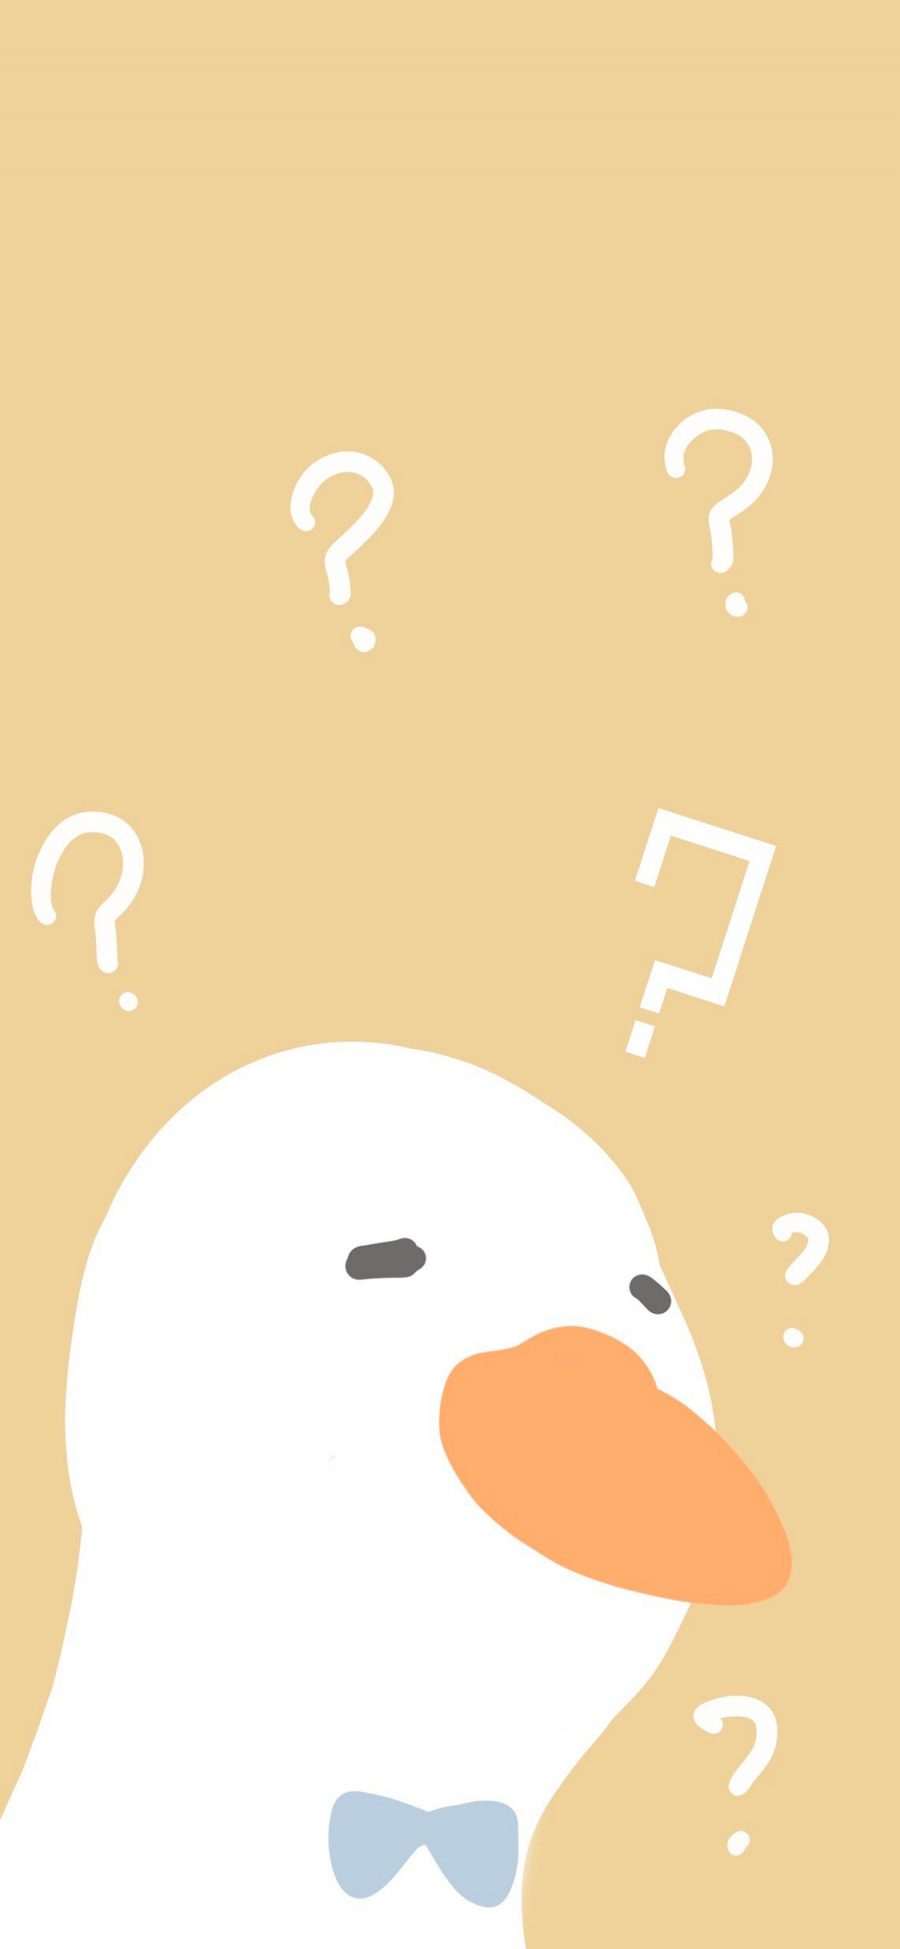 [2436×1125]鸭子 黄色 问号 疑问 蝴蝶结 卡通 苹果手机动漫壁纸图片